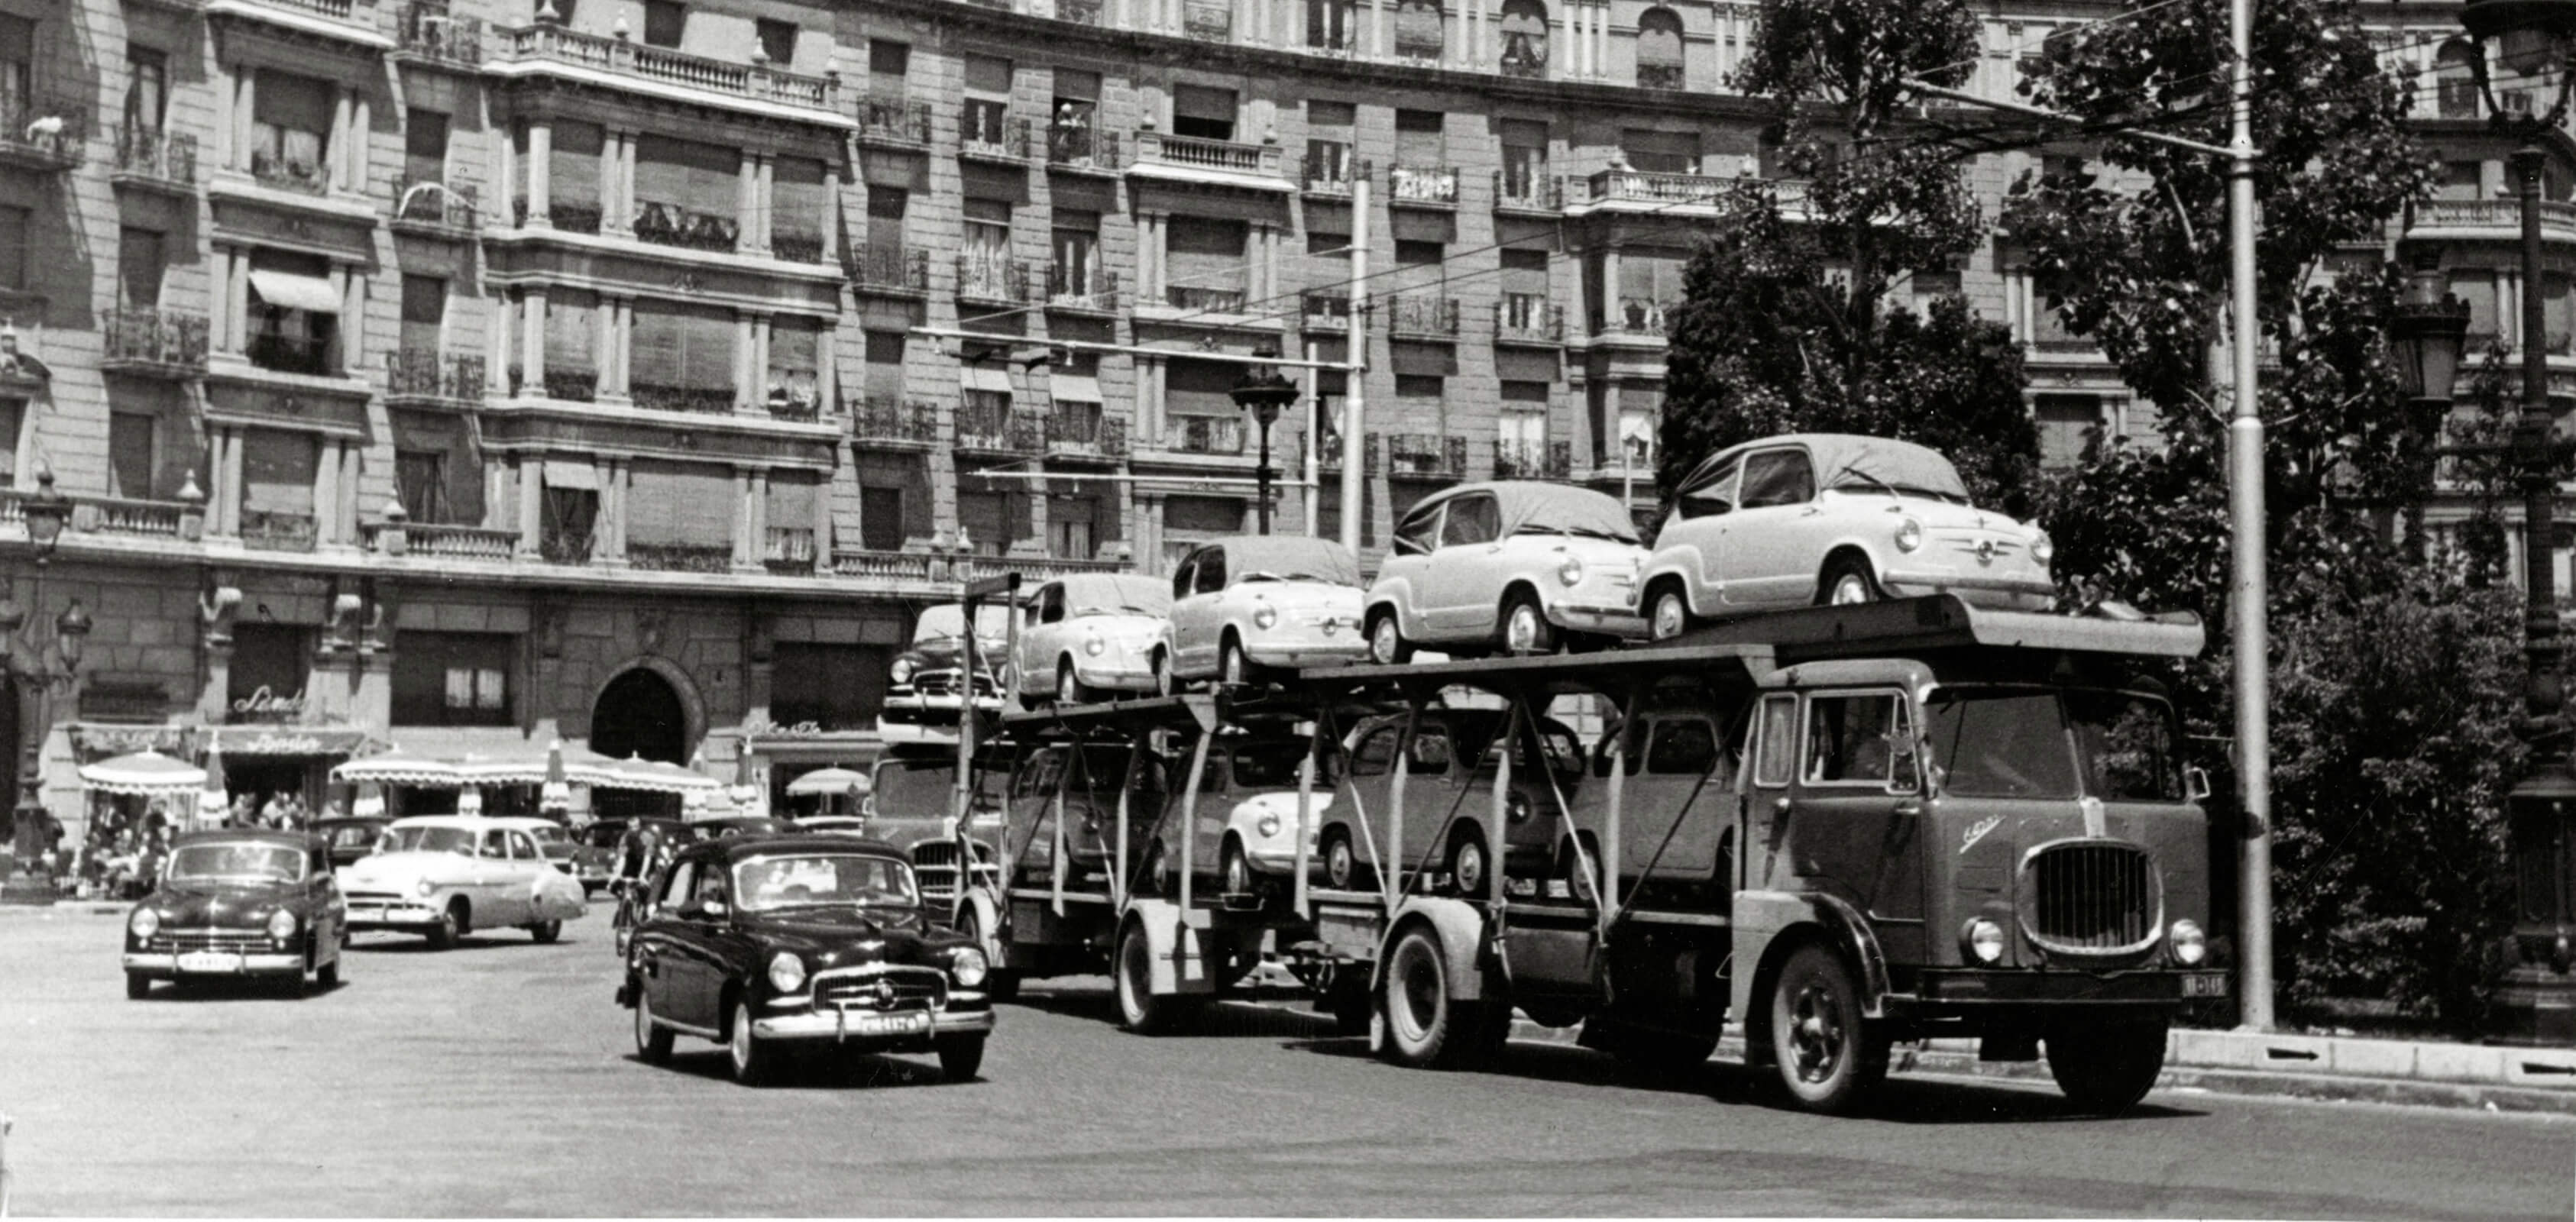 SEAT Historia de la marca 1950s - SEAT 600 en un camión.